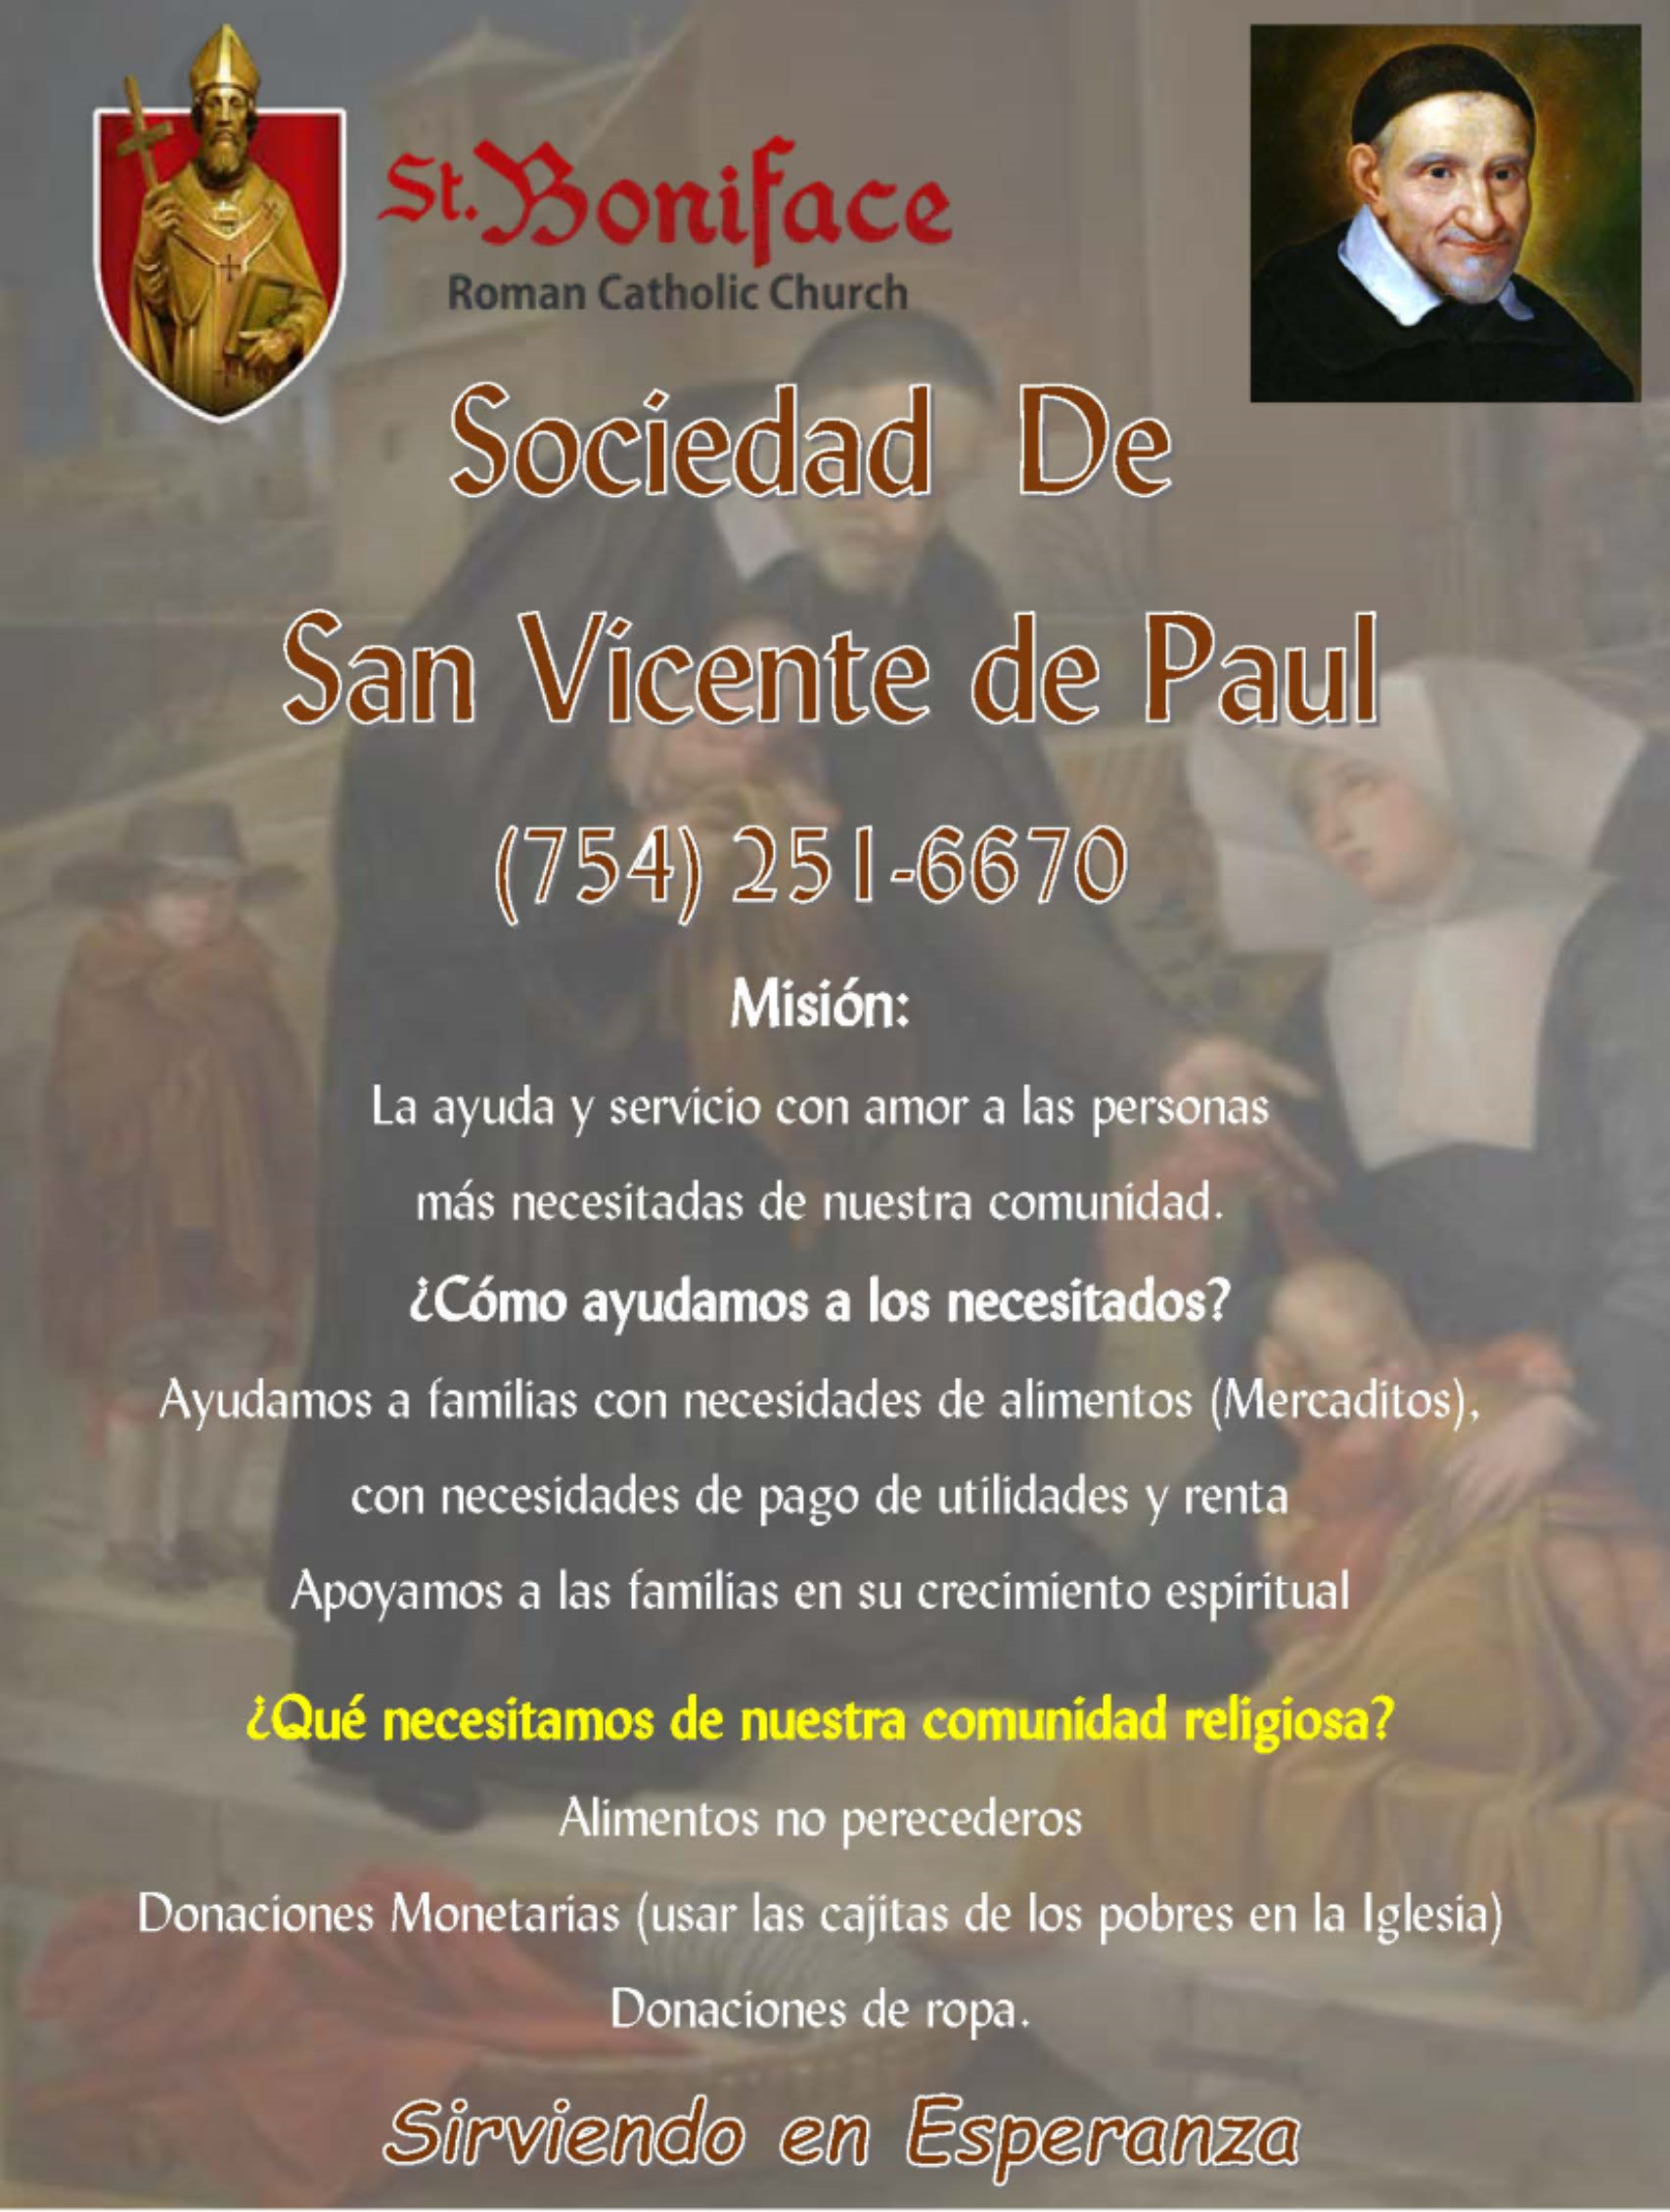 San Vicente de Paul